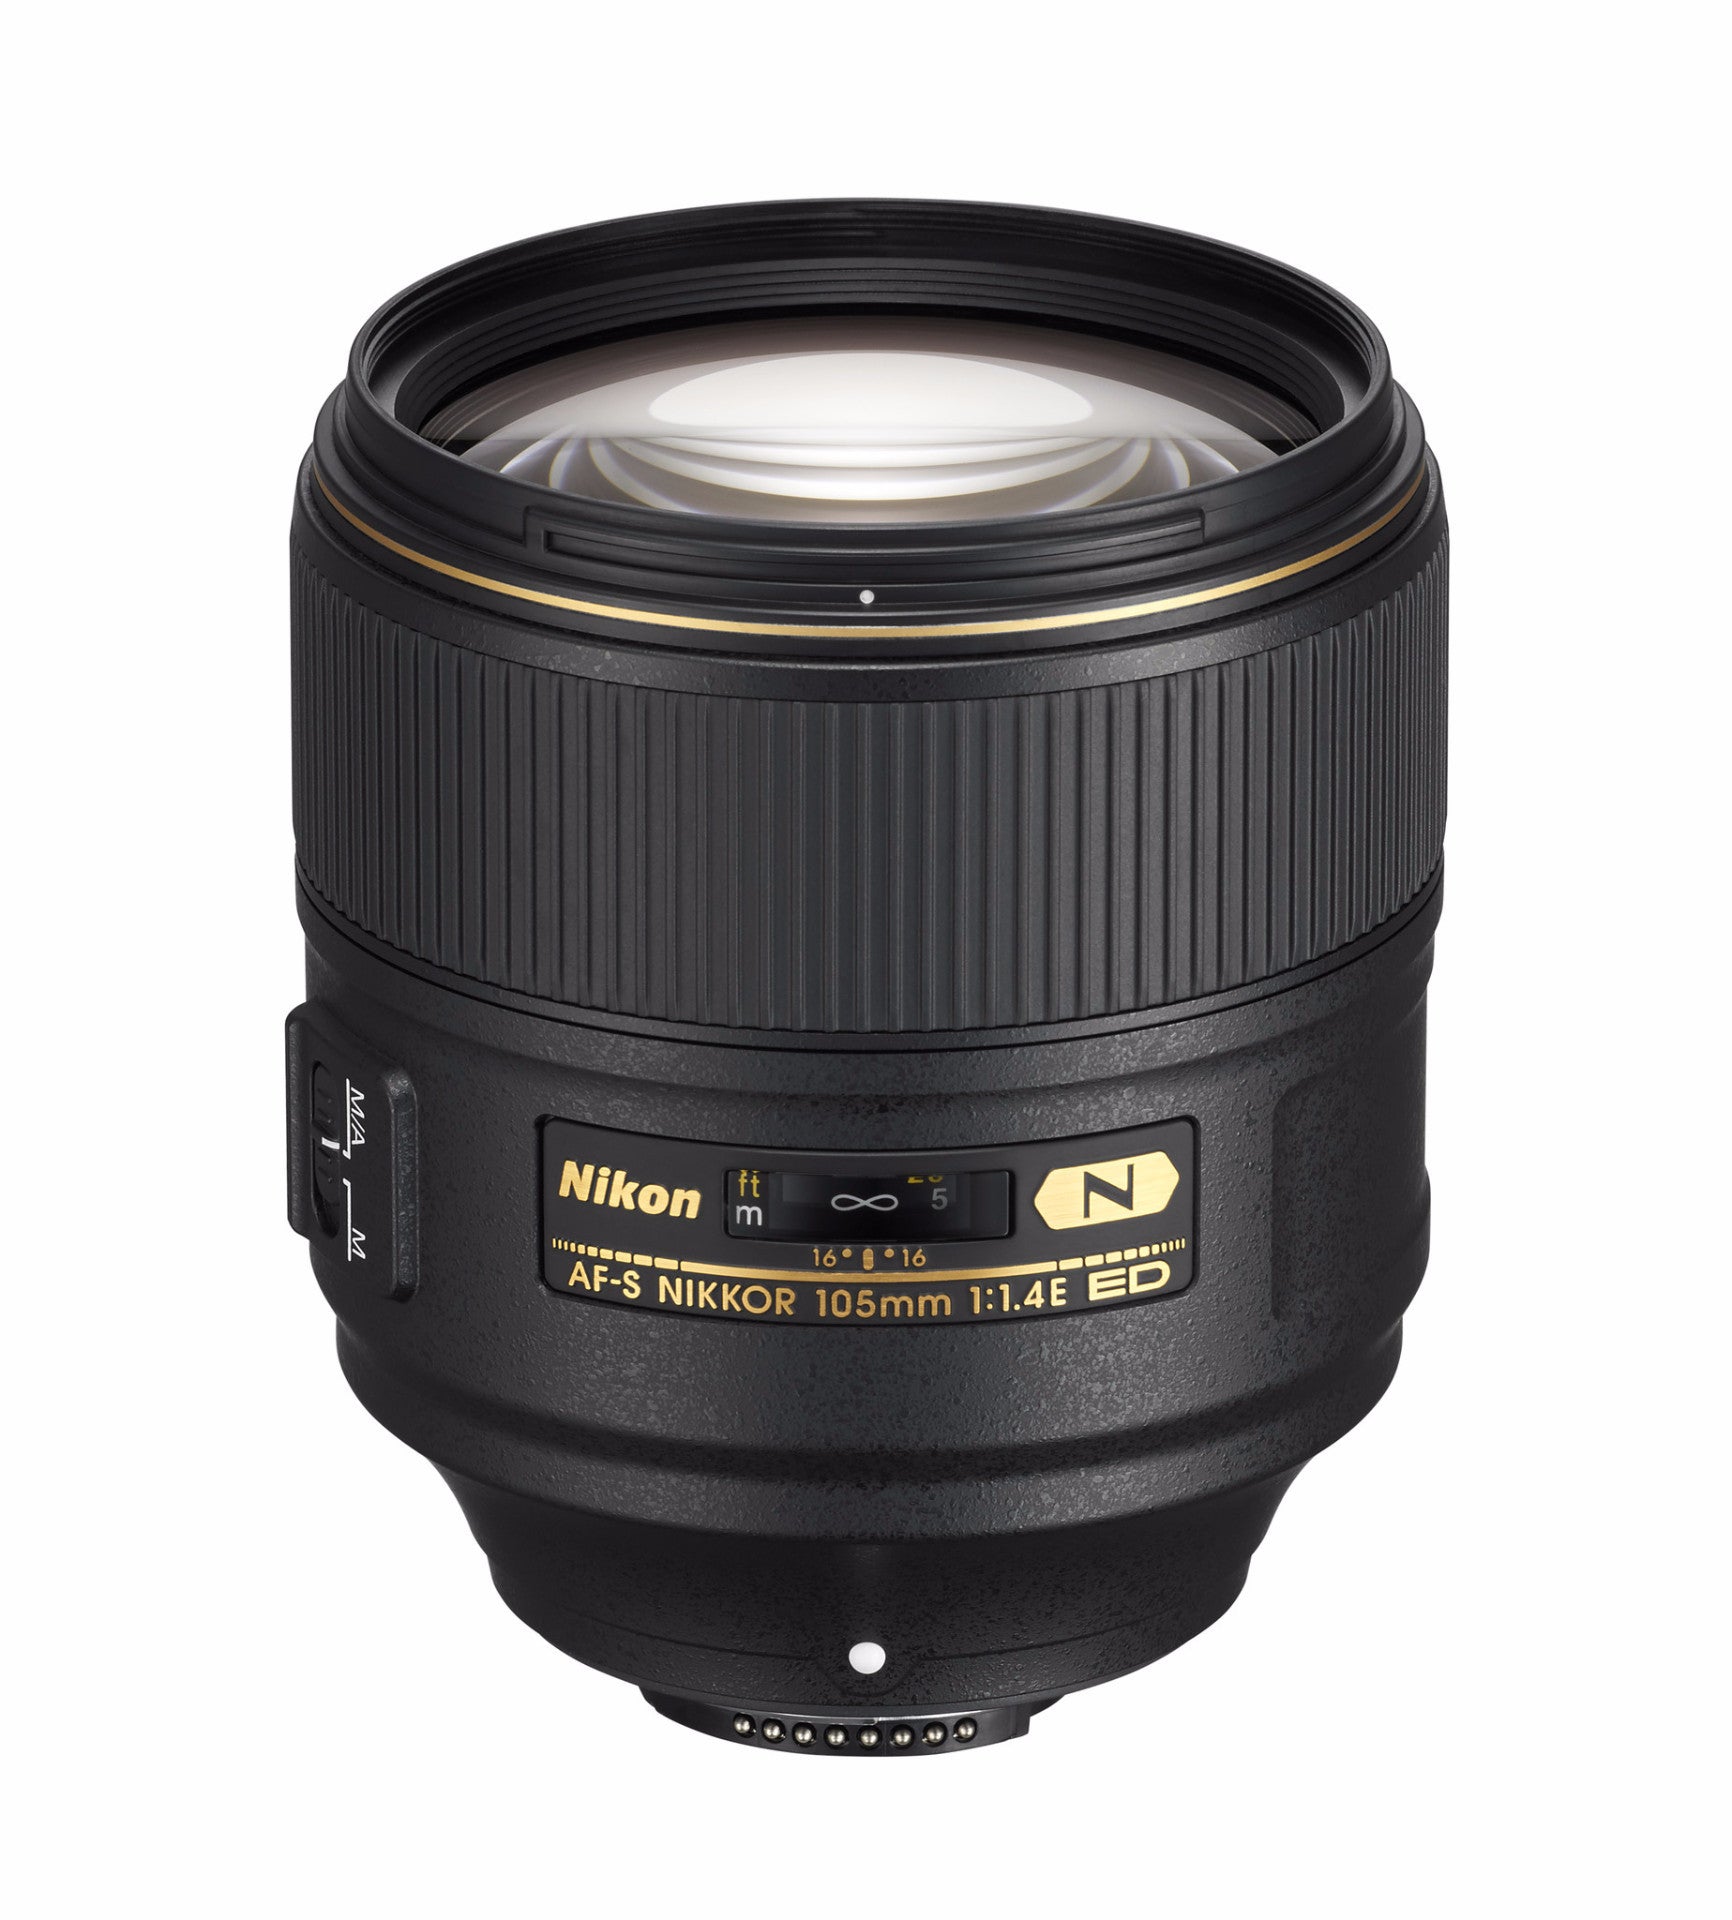 Nikon 105mm f/1.4E ED AF-S Nikkor Lens, lenses slr lenses, Nikon - Pictureline 